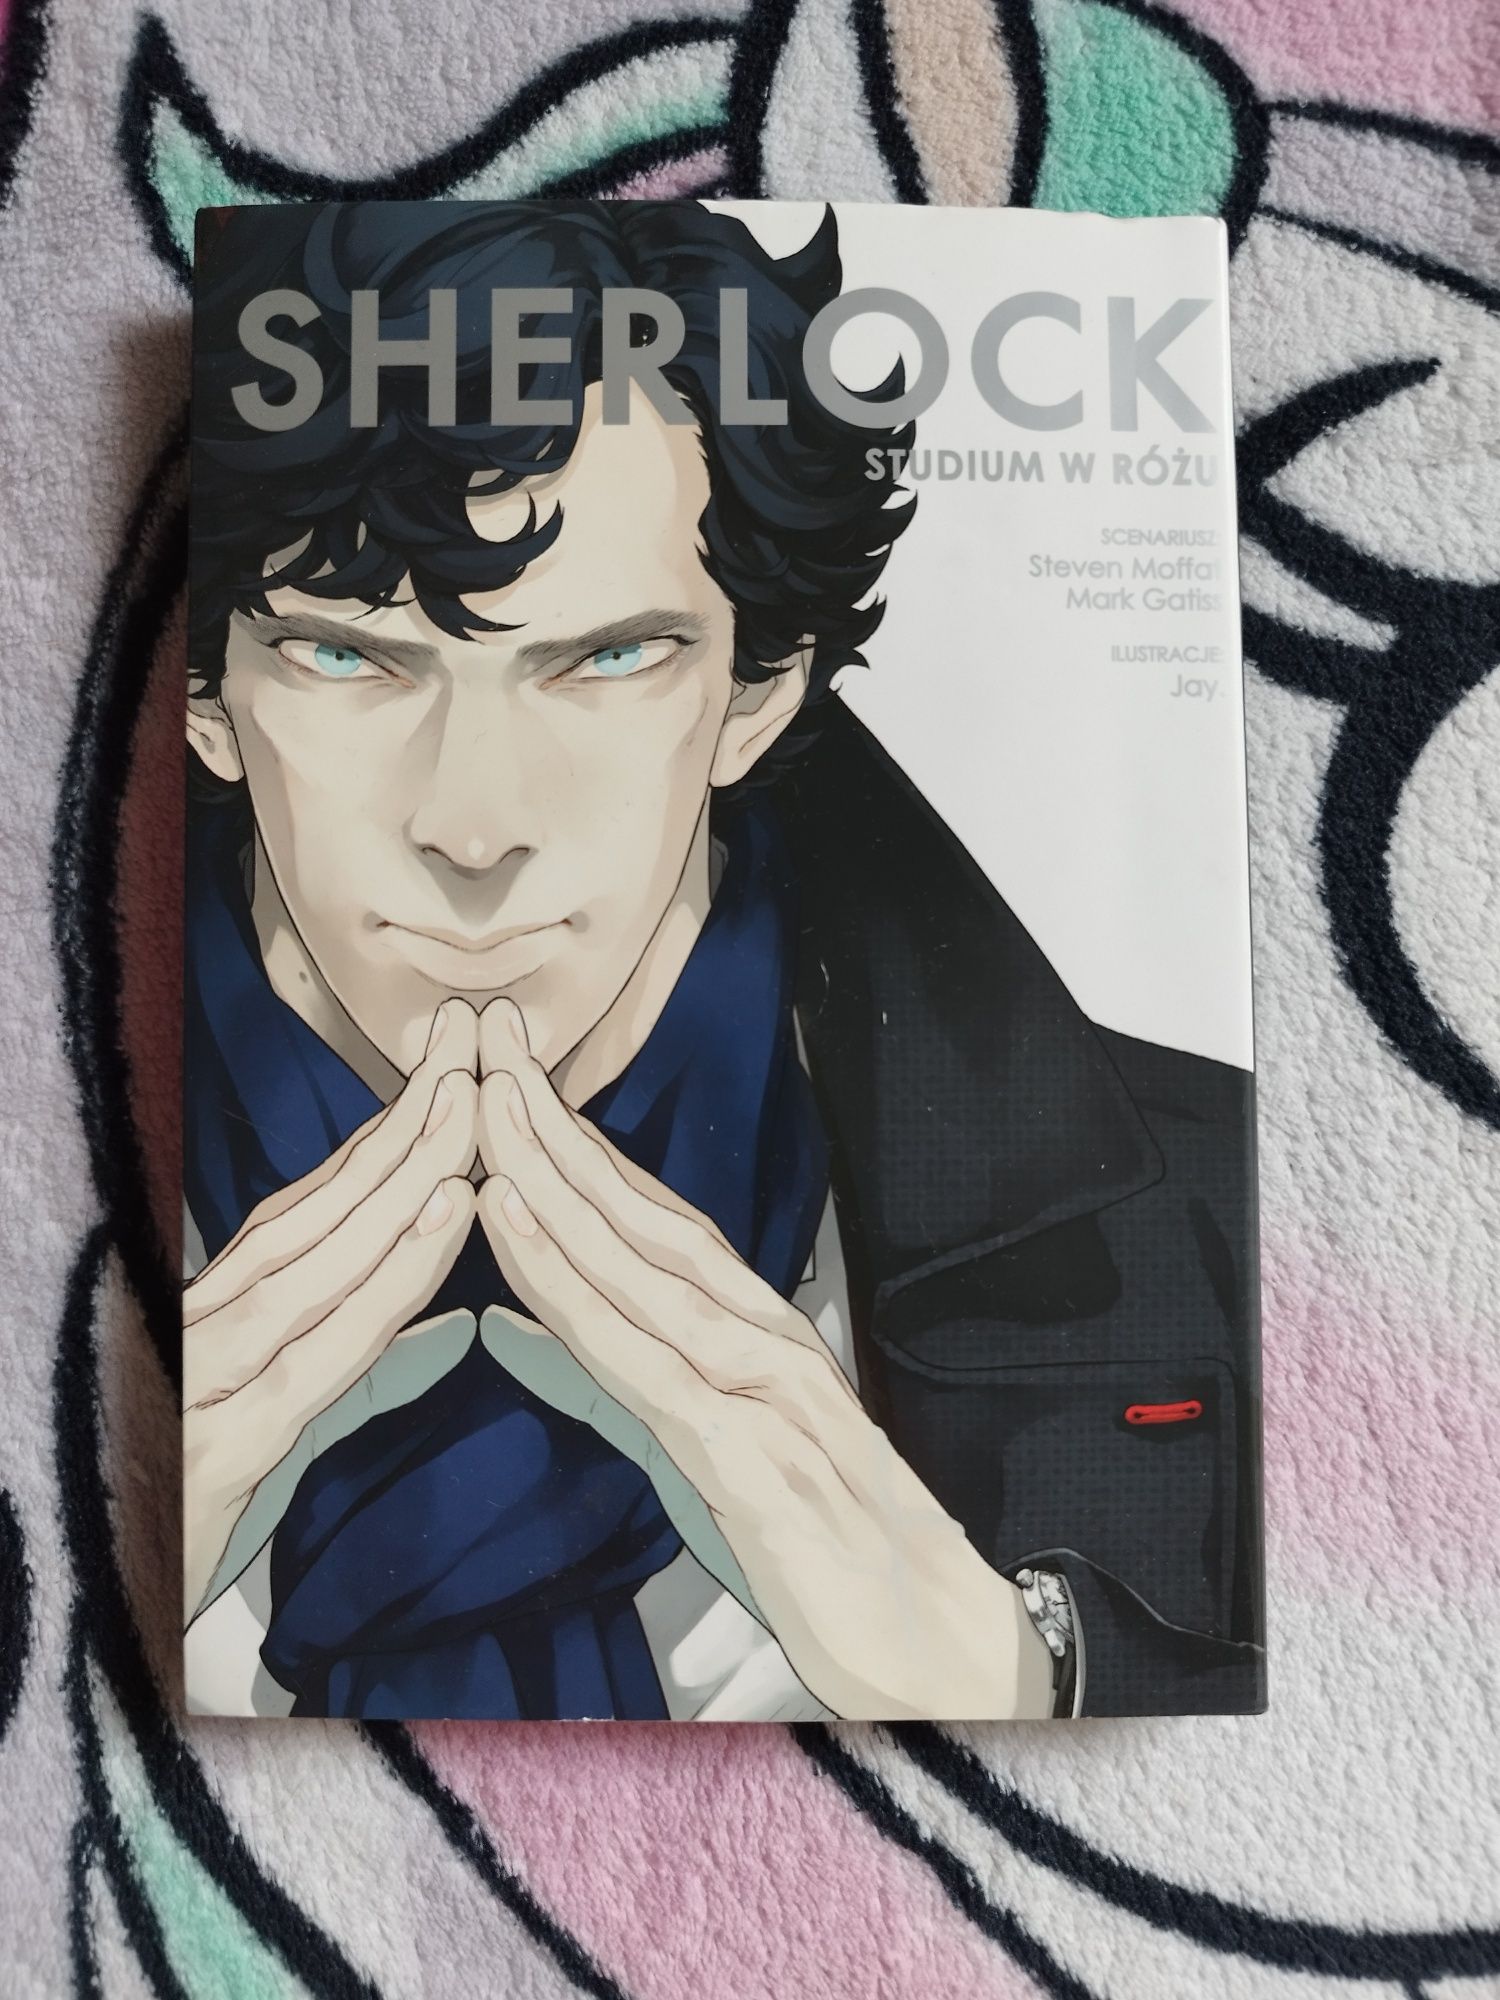 Manga Sherlock BBC